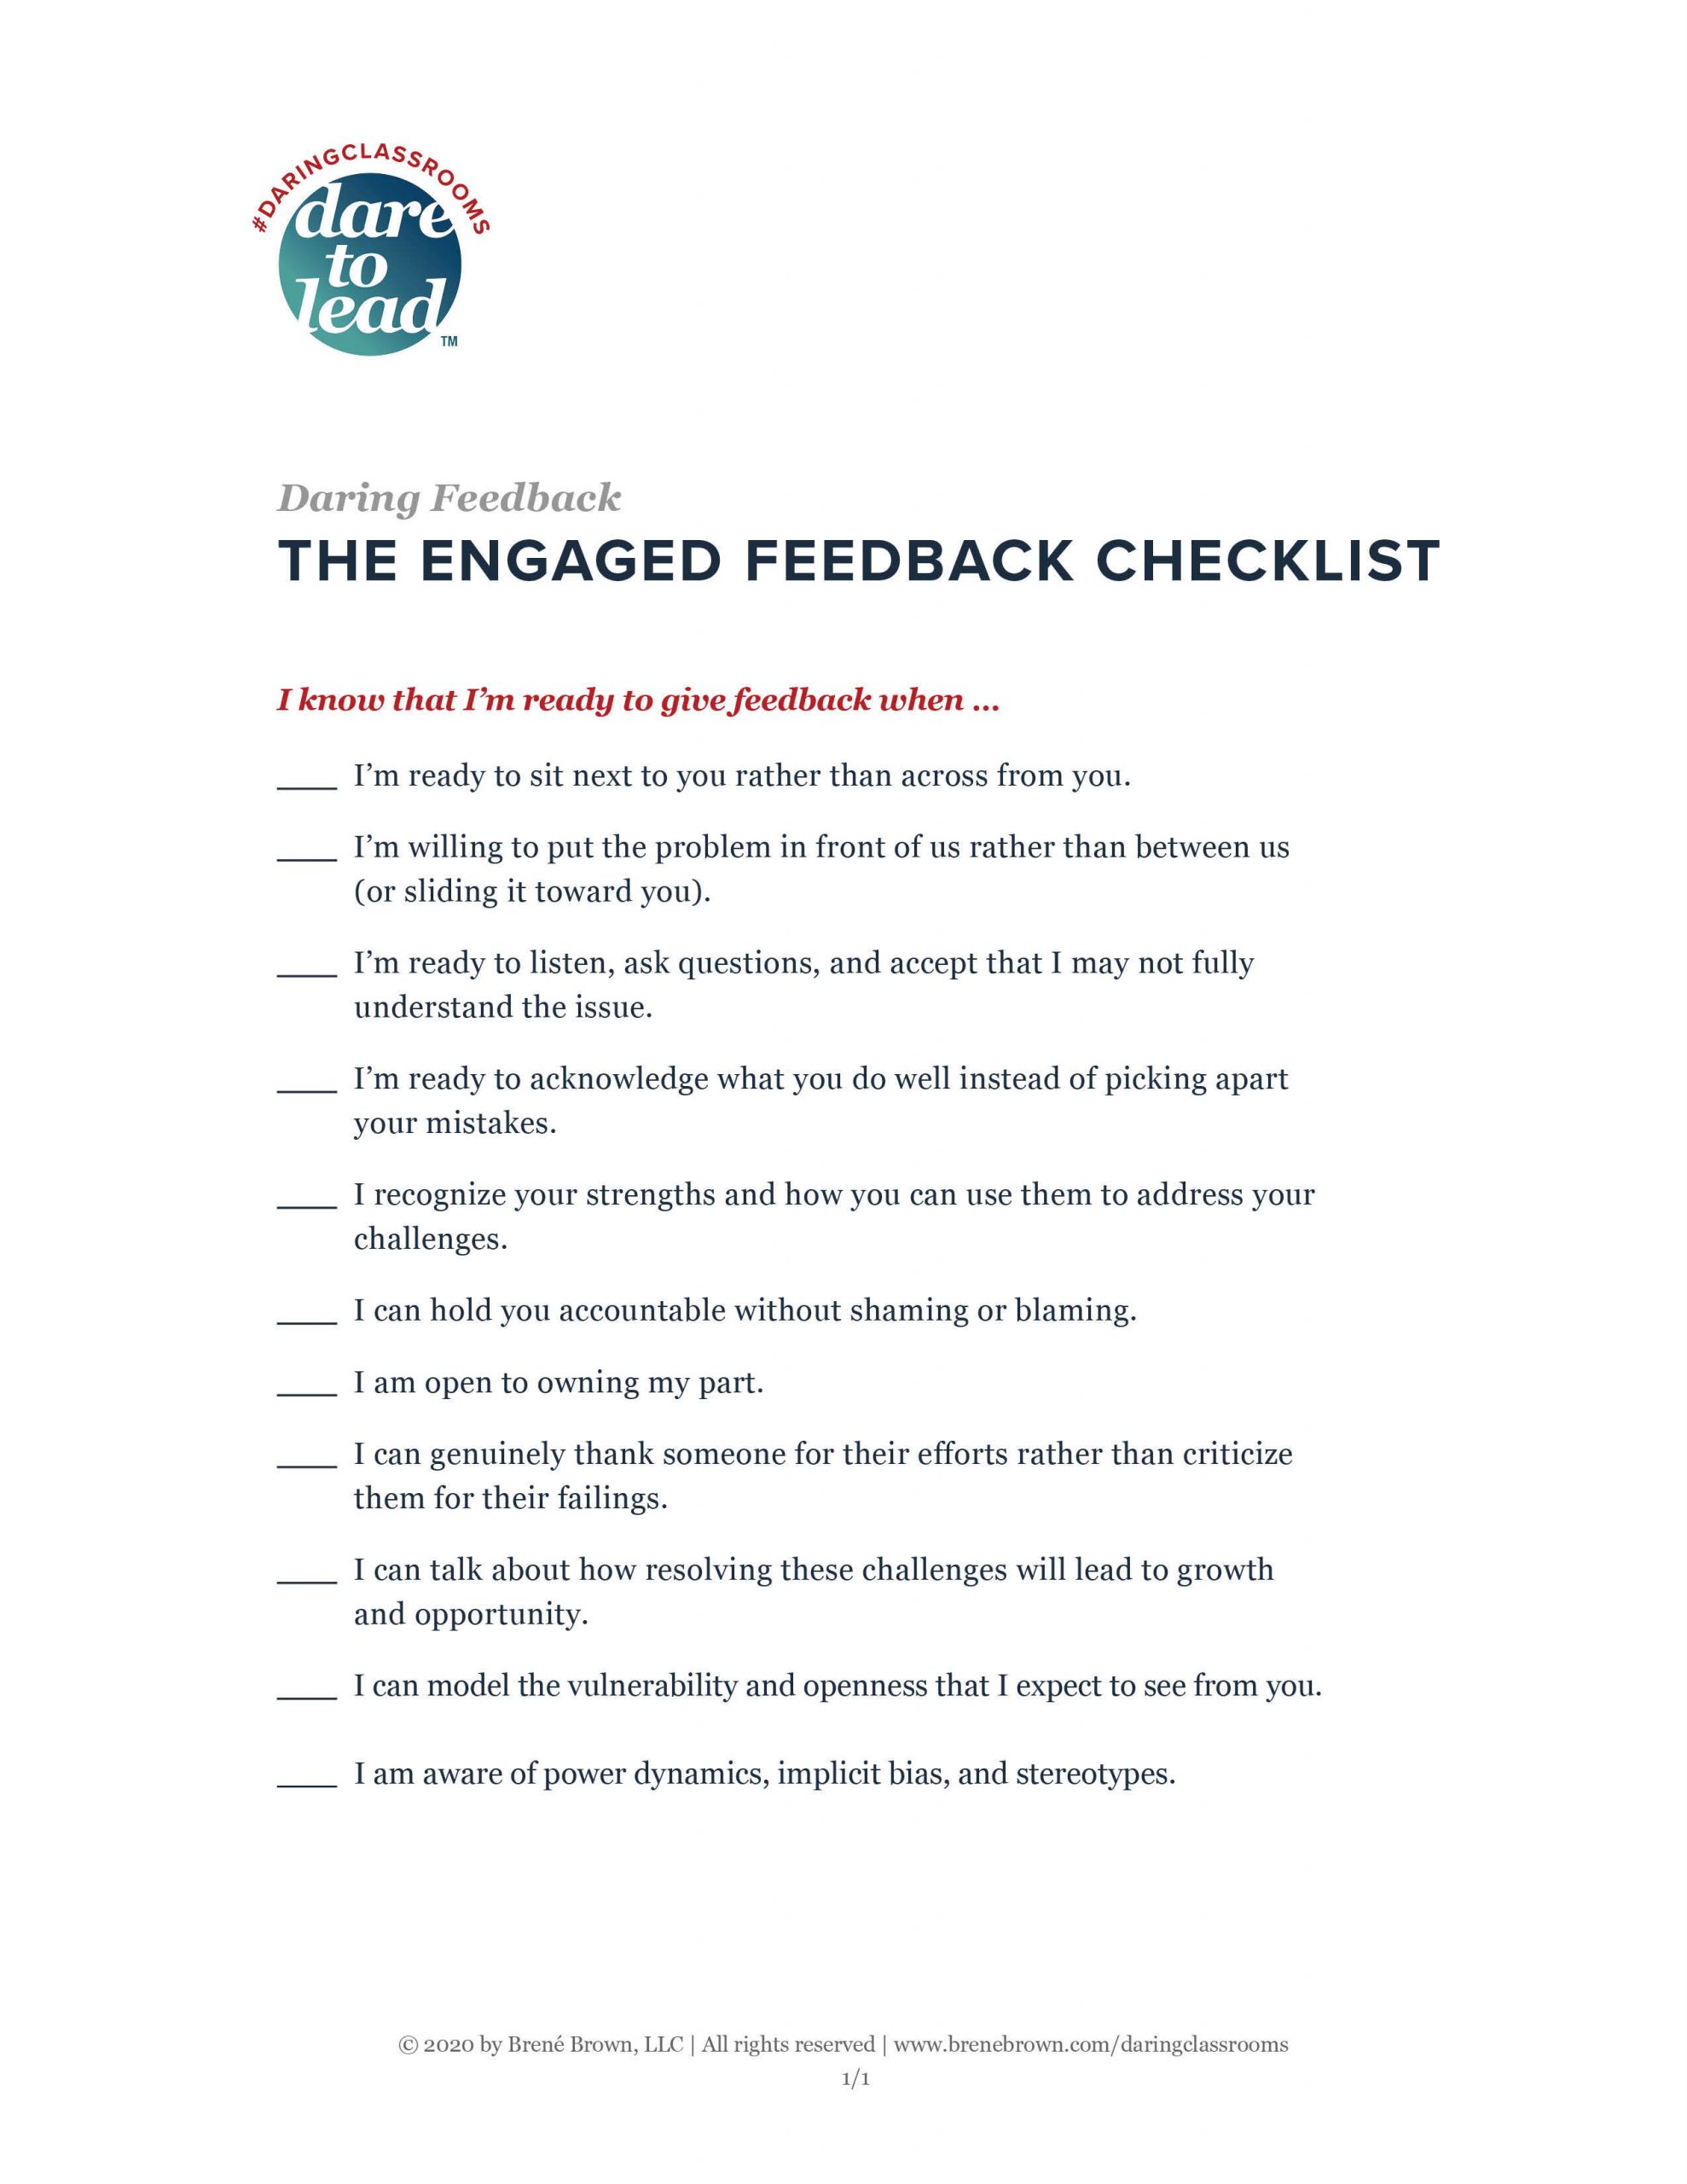 Daring Feedback Checklist